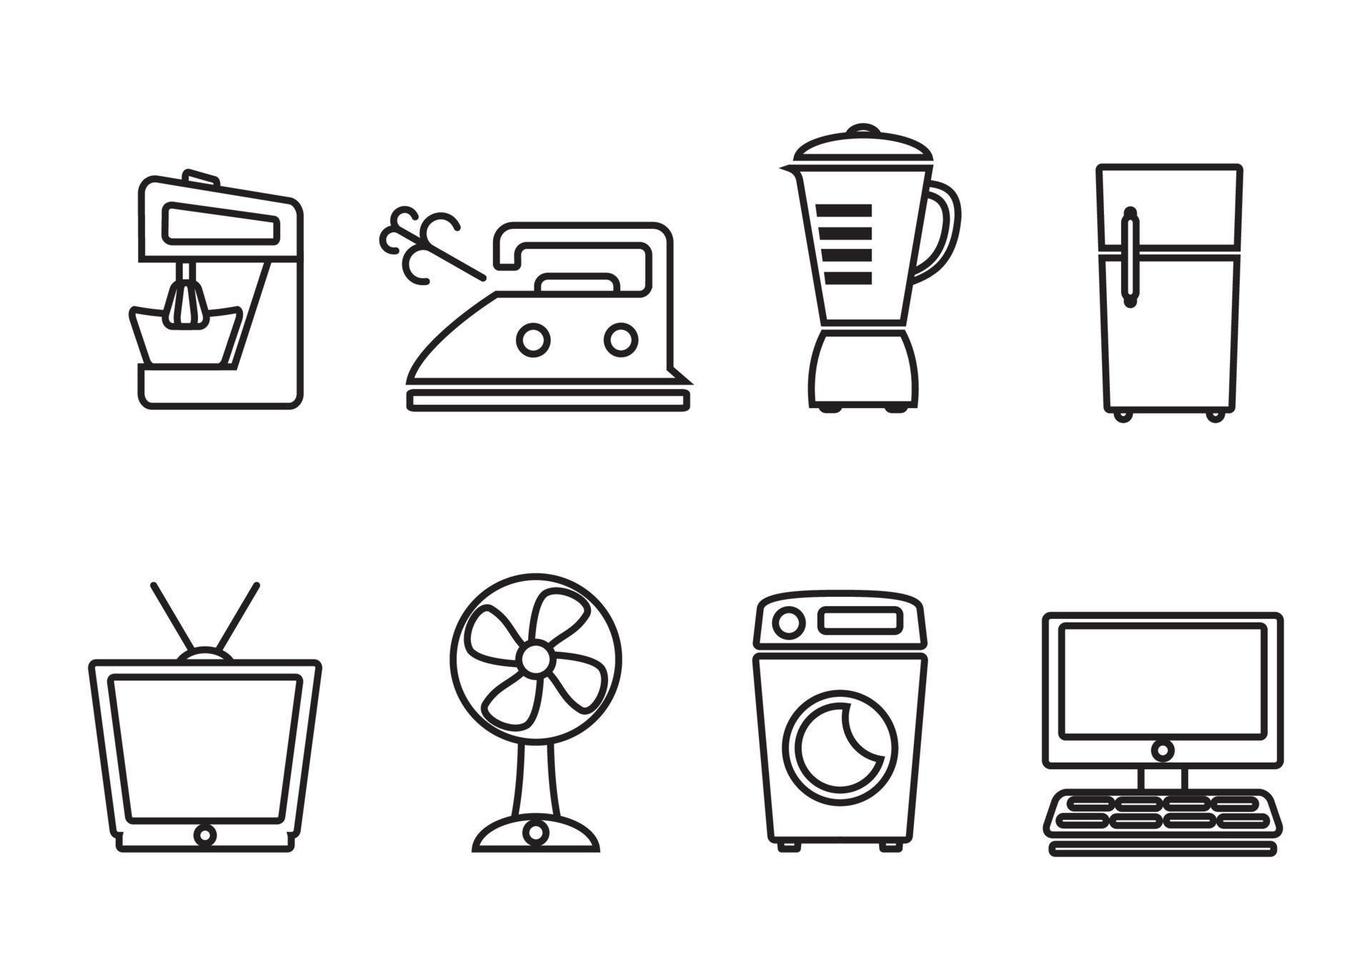 conjunto de gráficos vectoriales modernos de iconos de equipos electrónicos domésticos vector